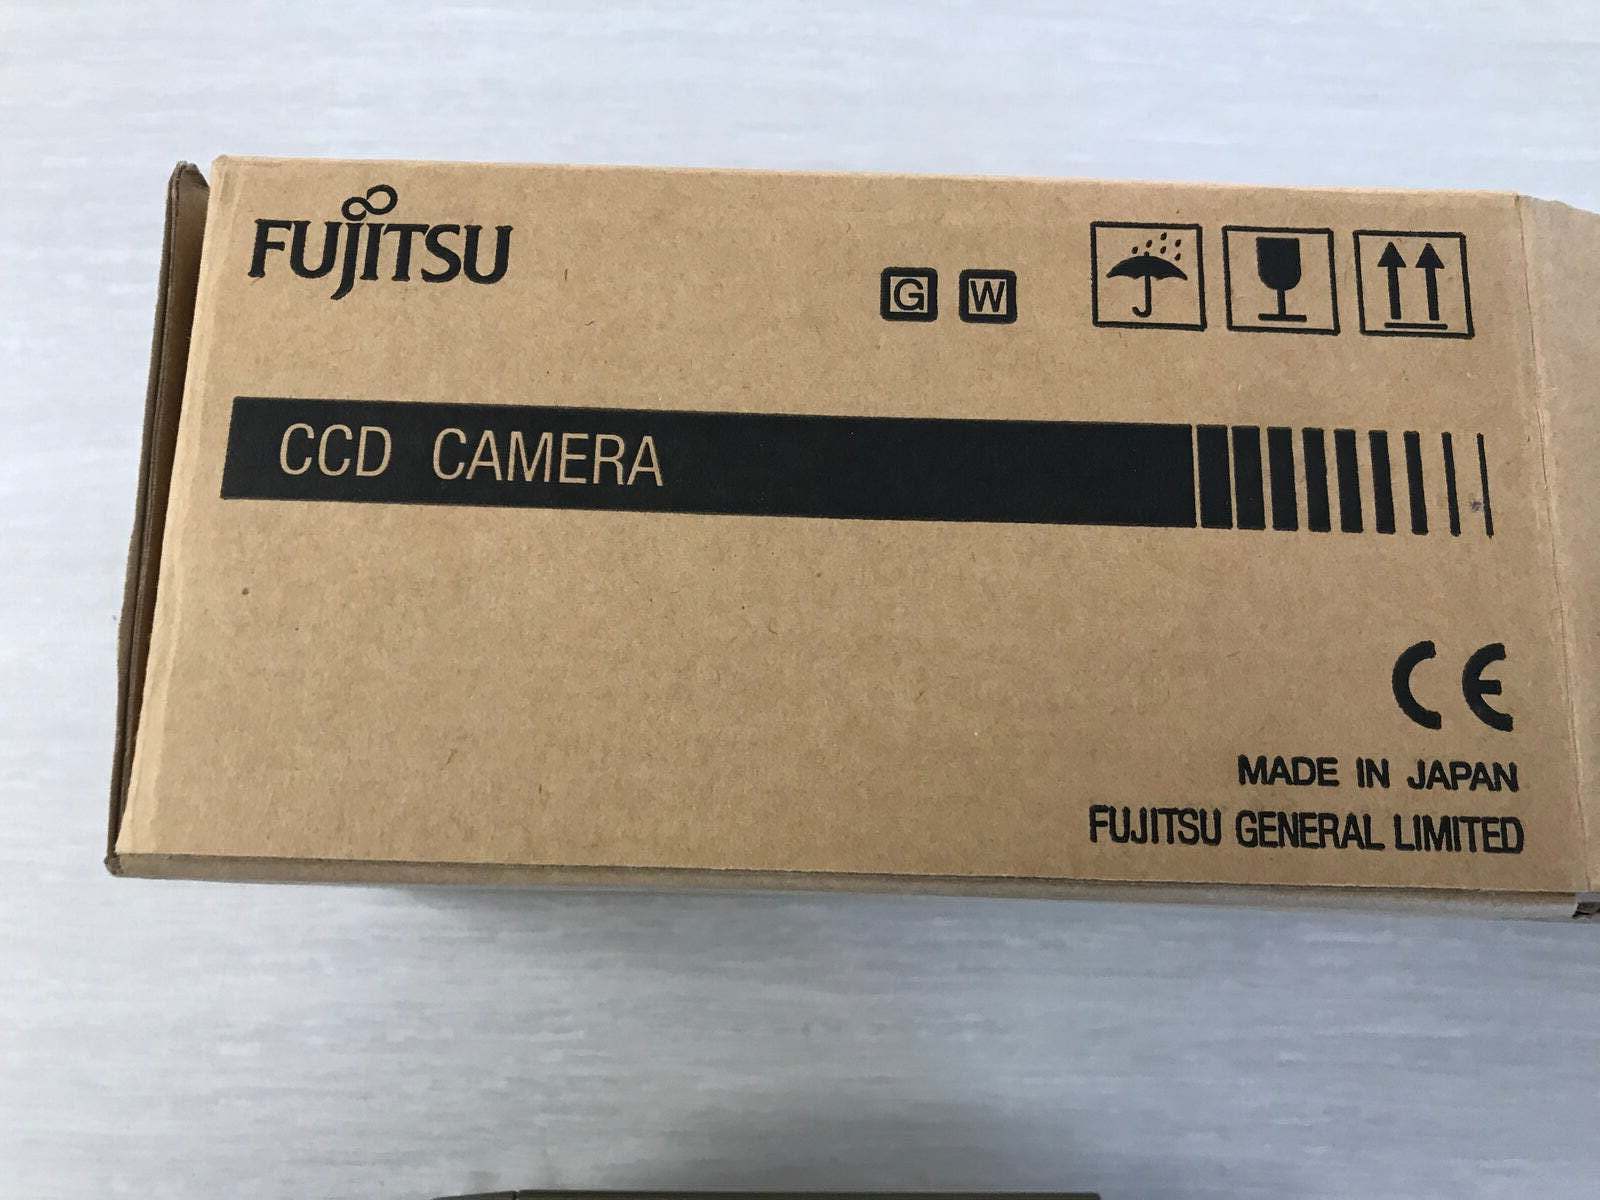 Overvågningskamera, Fujitsu ccd camera